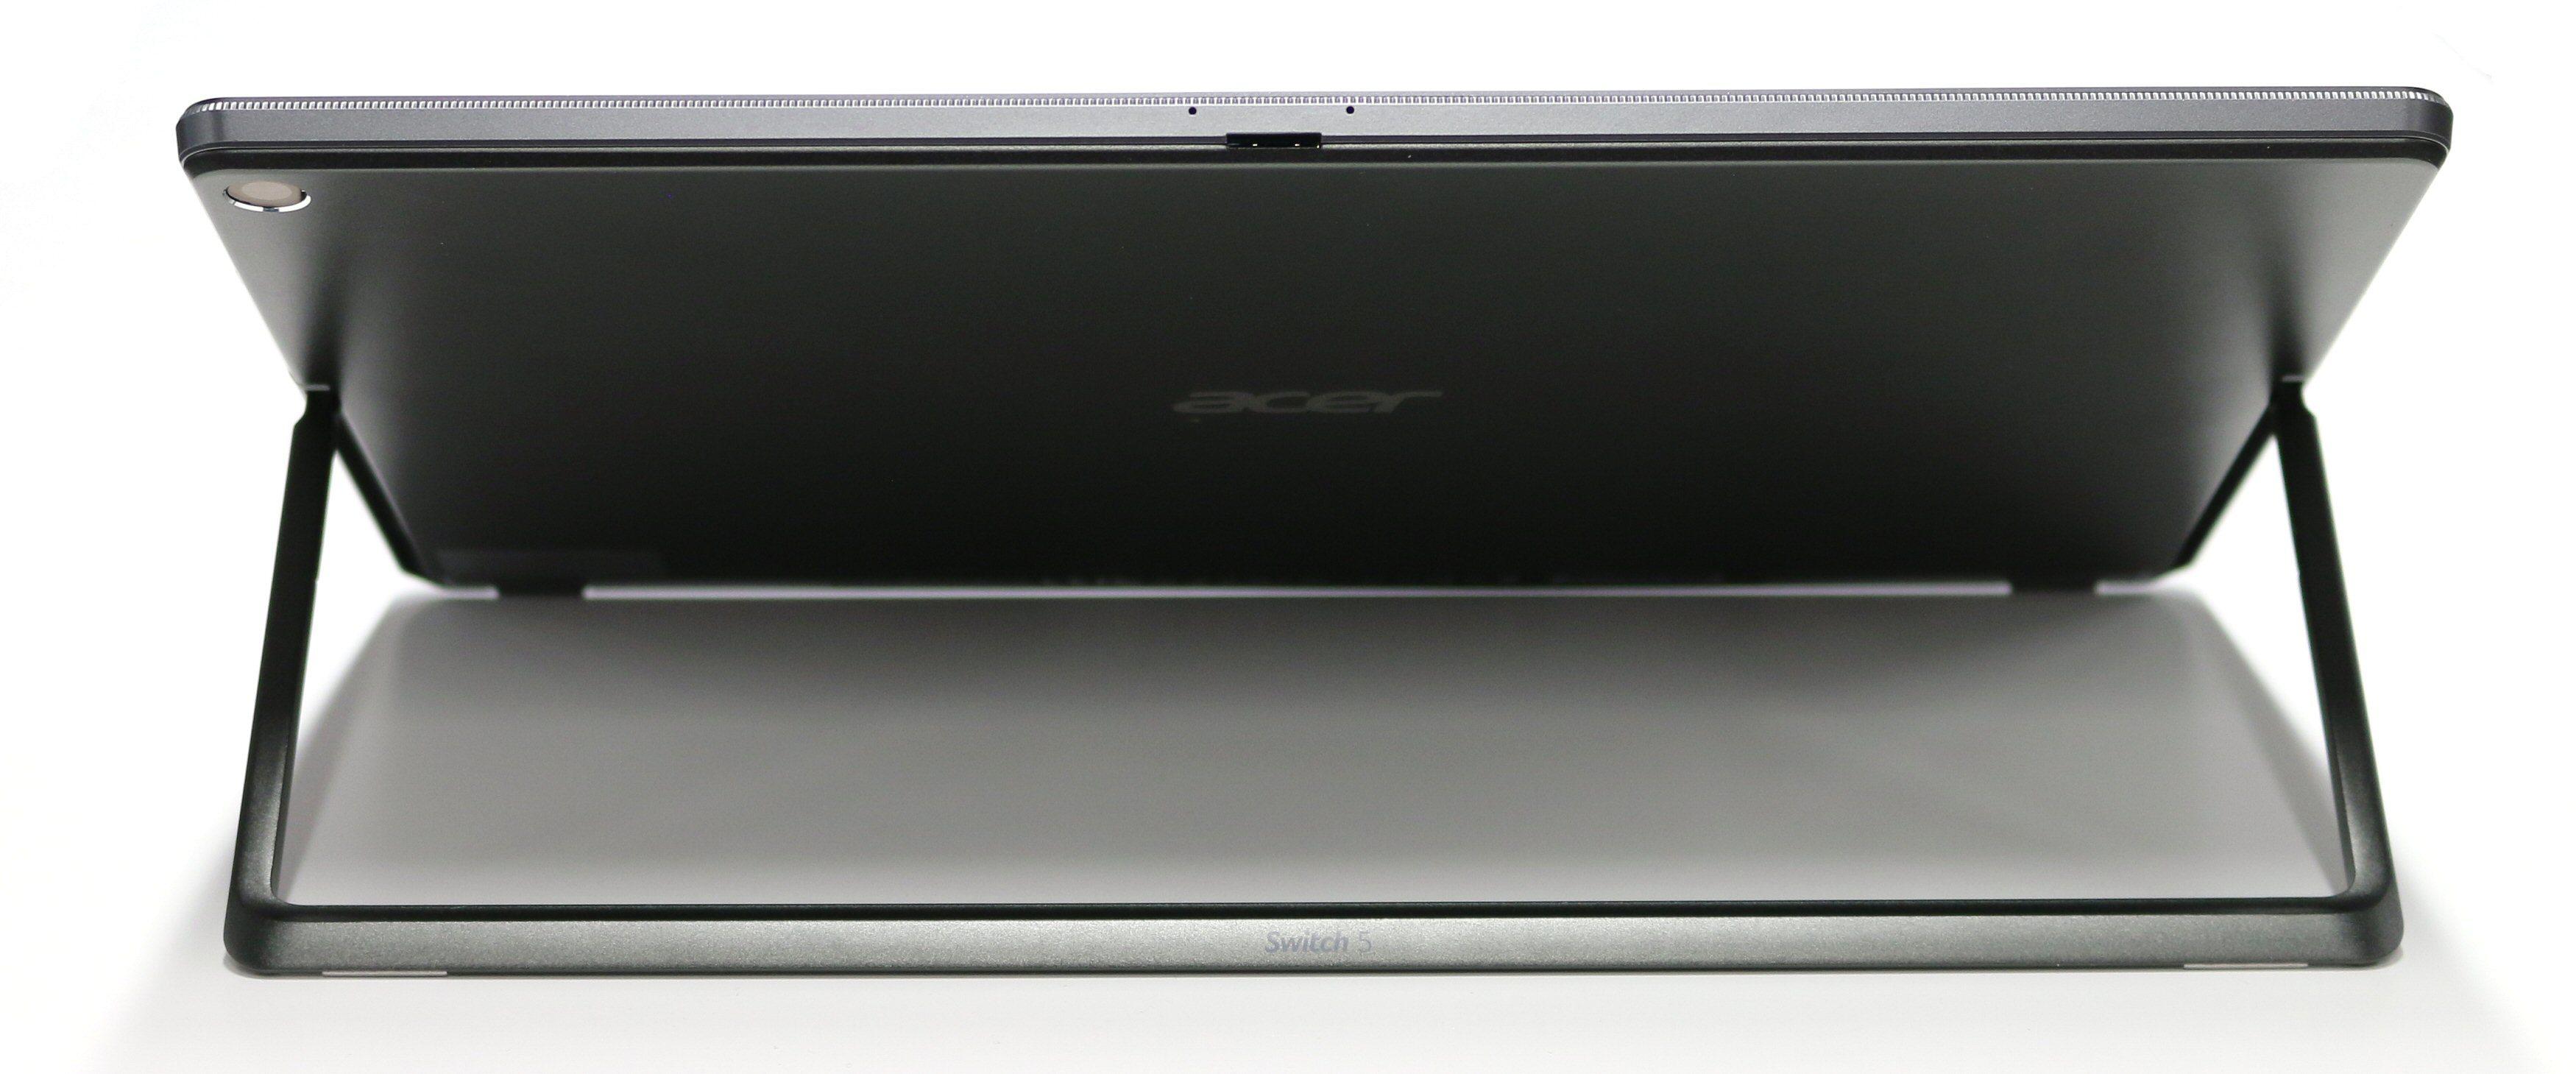 Acer Switch 5 har «støtteramme» i stedet for et støttebein, og minnekortleseren sitter på toppen av datamaskinen. Bilde: Vegar Jansen, Tek.no